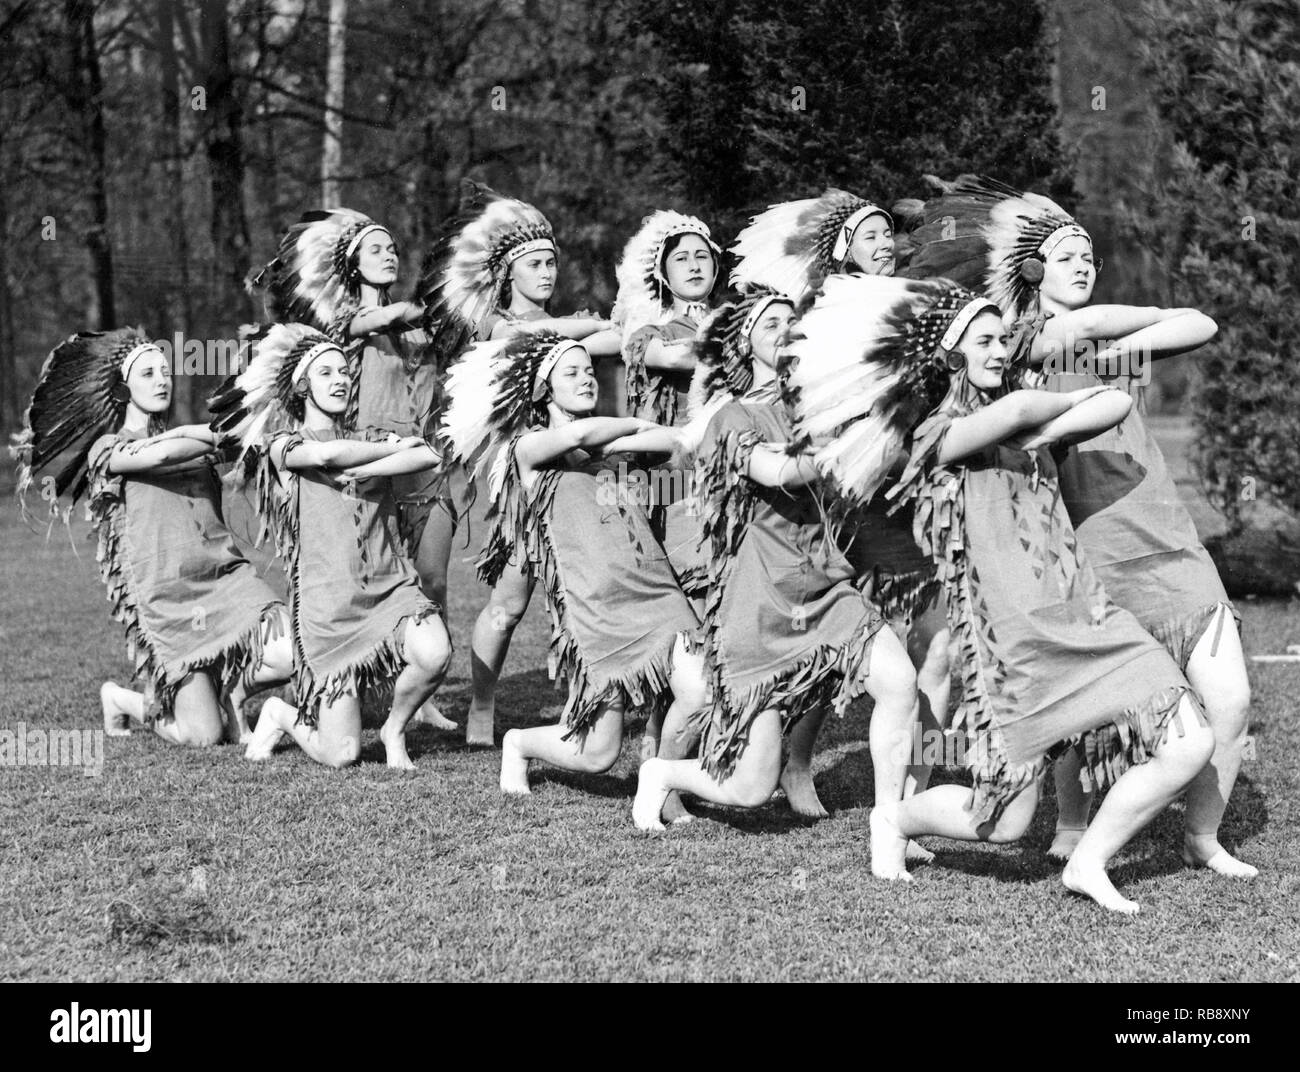 Alle gekleidet in den 1930er Jahren. Eine Gruppe junger Frauen als native american Indianer Federkopfschmuck gekleidet. Stockfoto